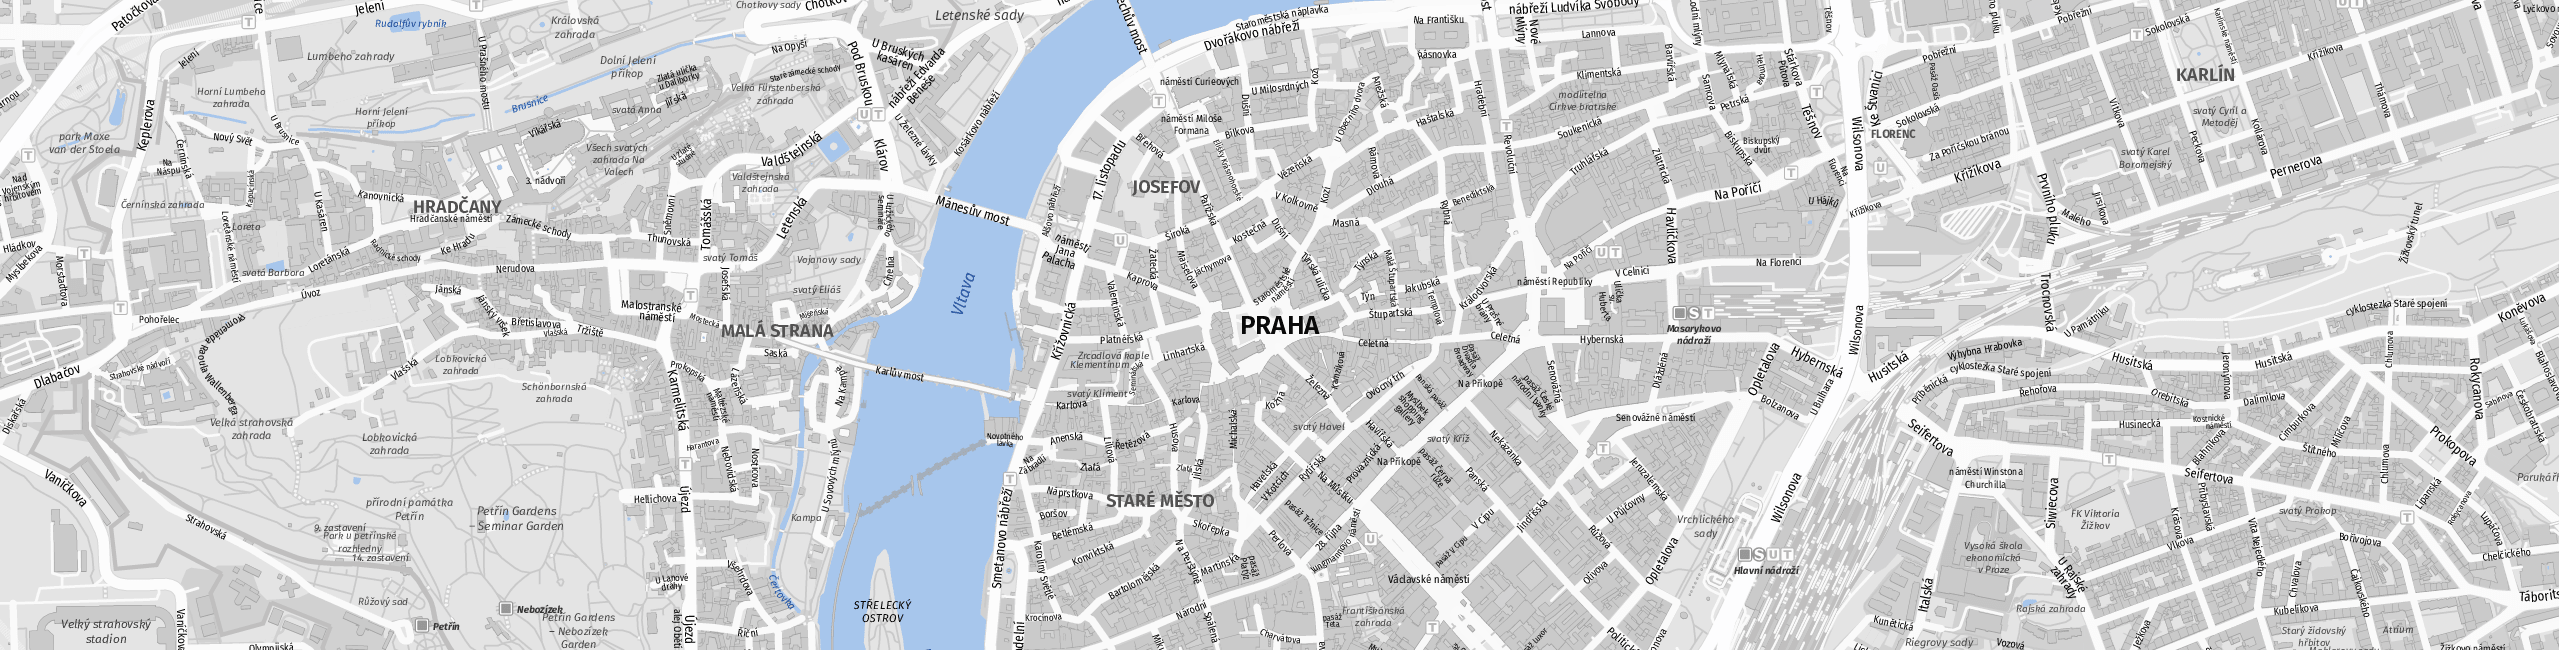 Stadtplan Prag zum Downloaden.